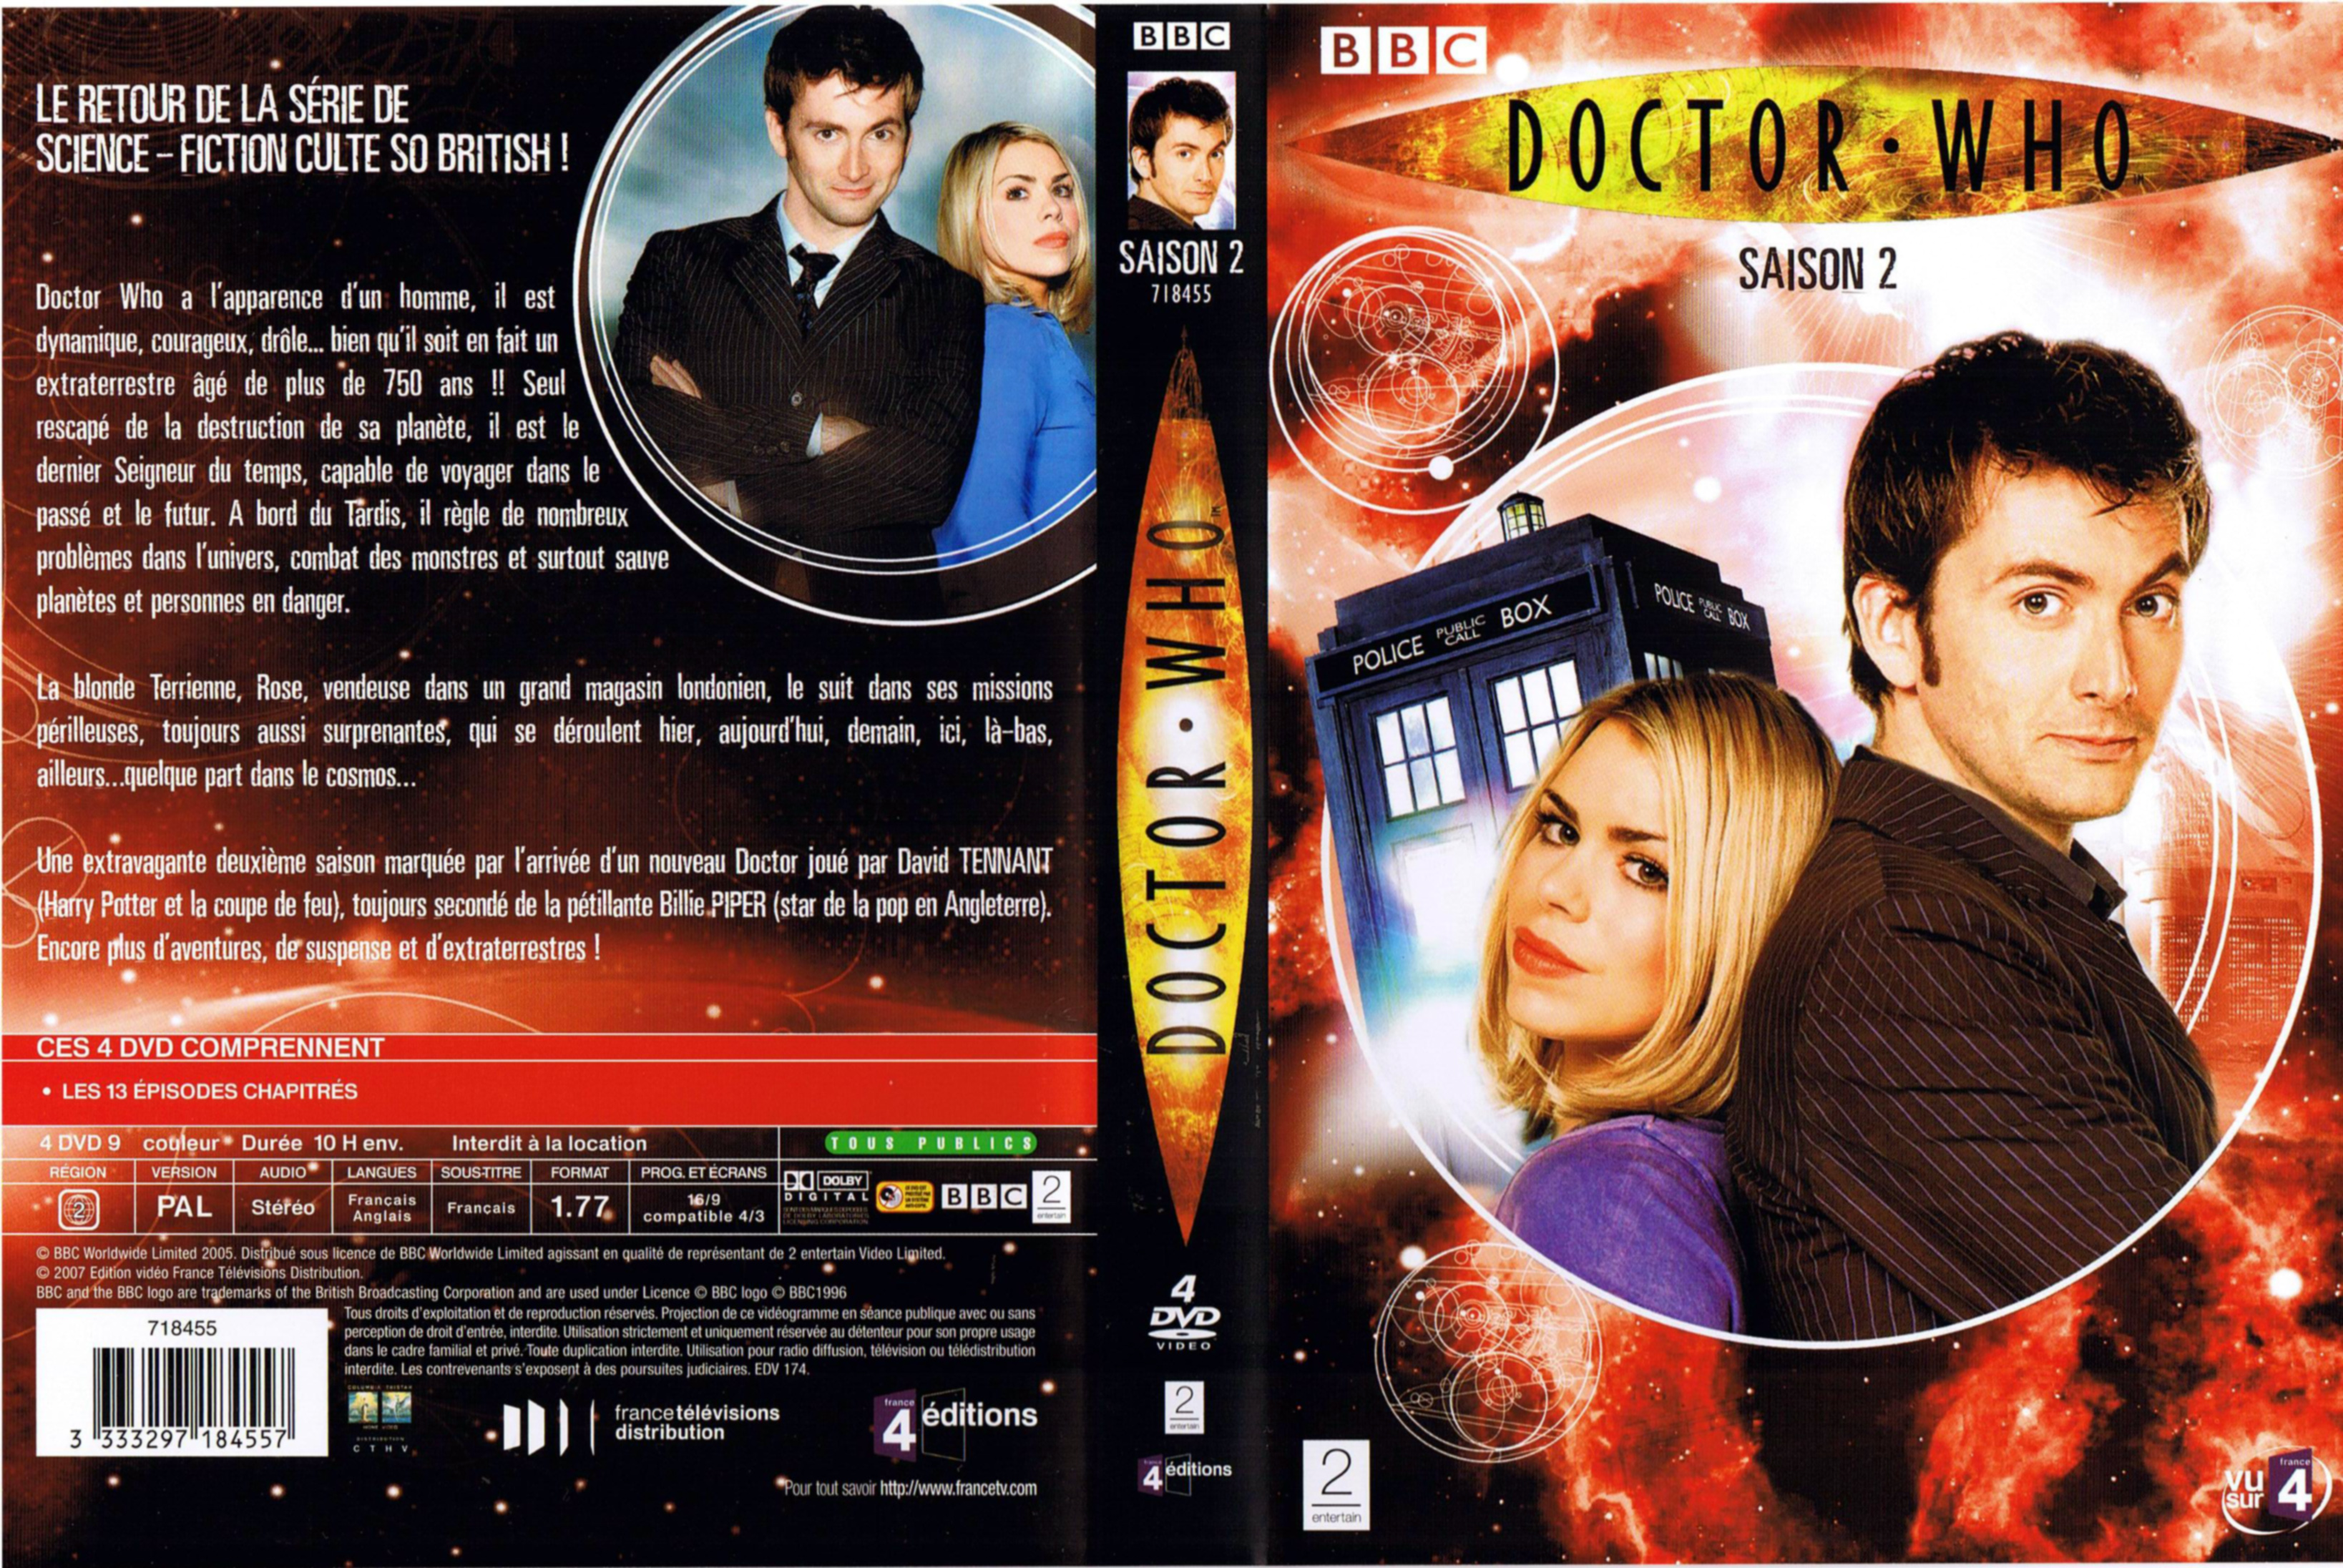 Jaquette DVD Doctor Who Saison 2 COFFRET